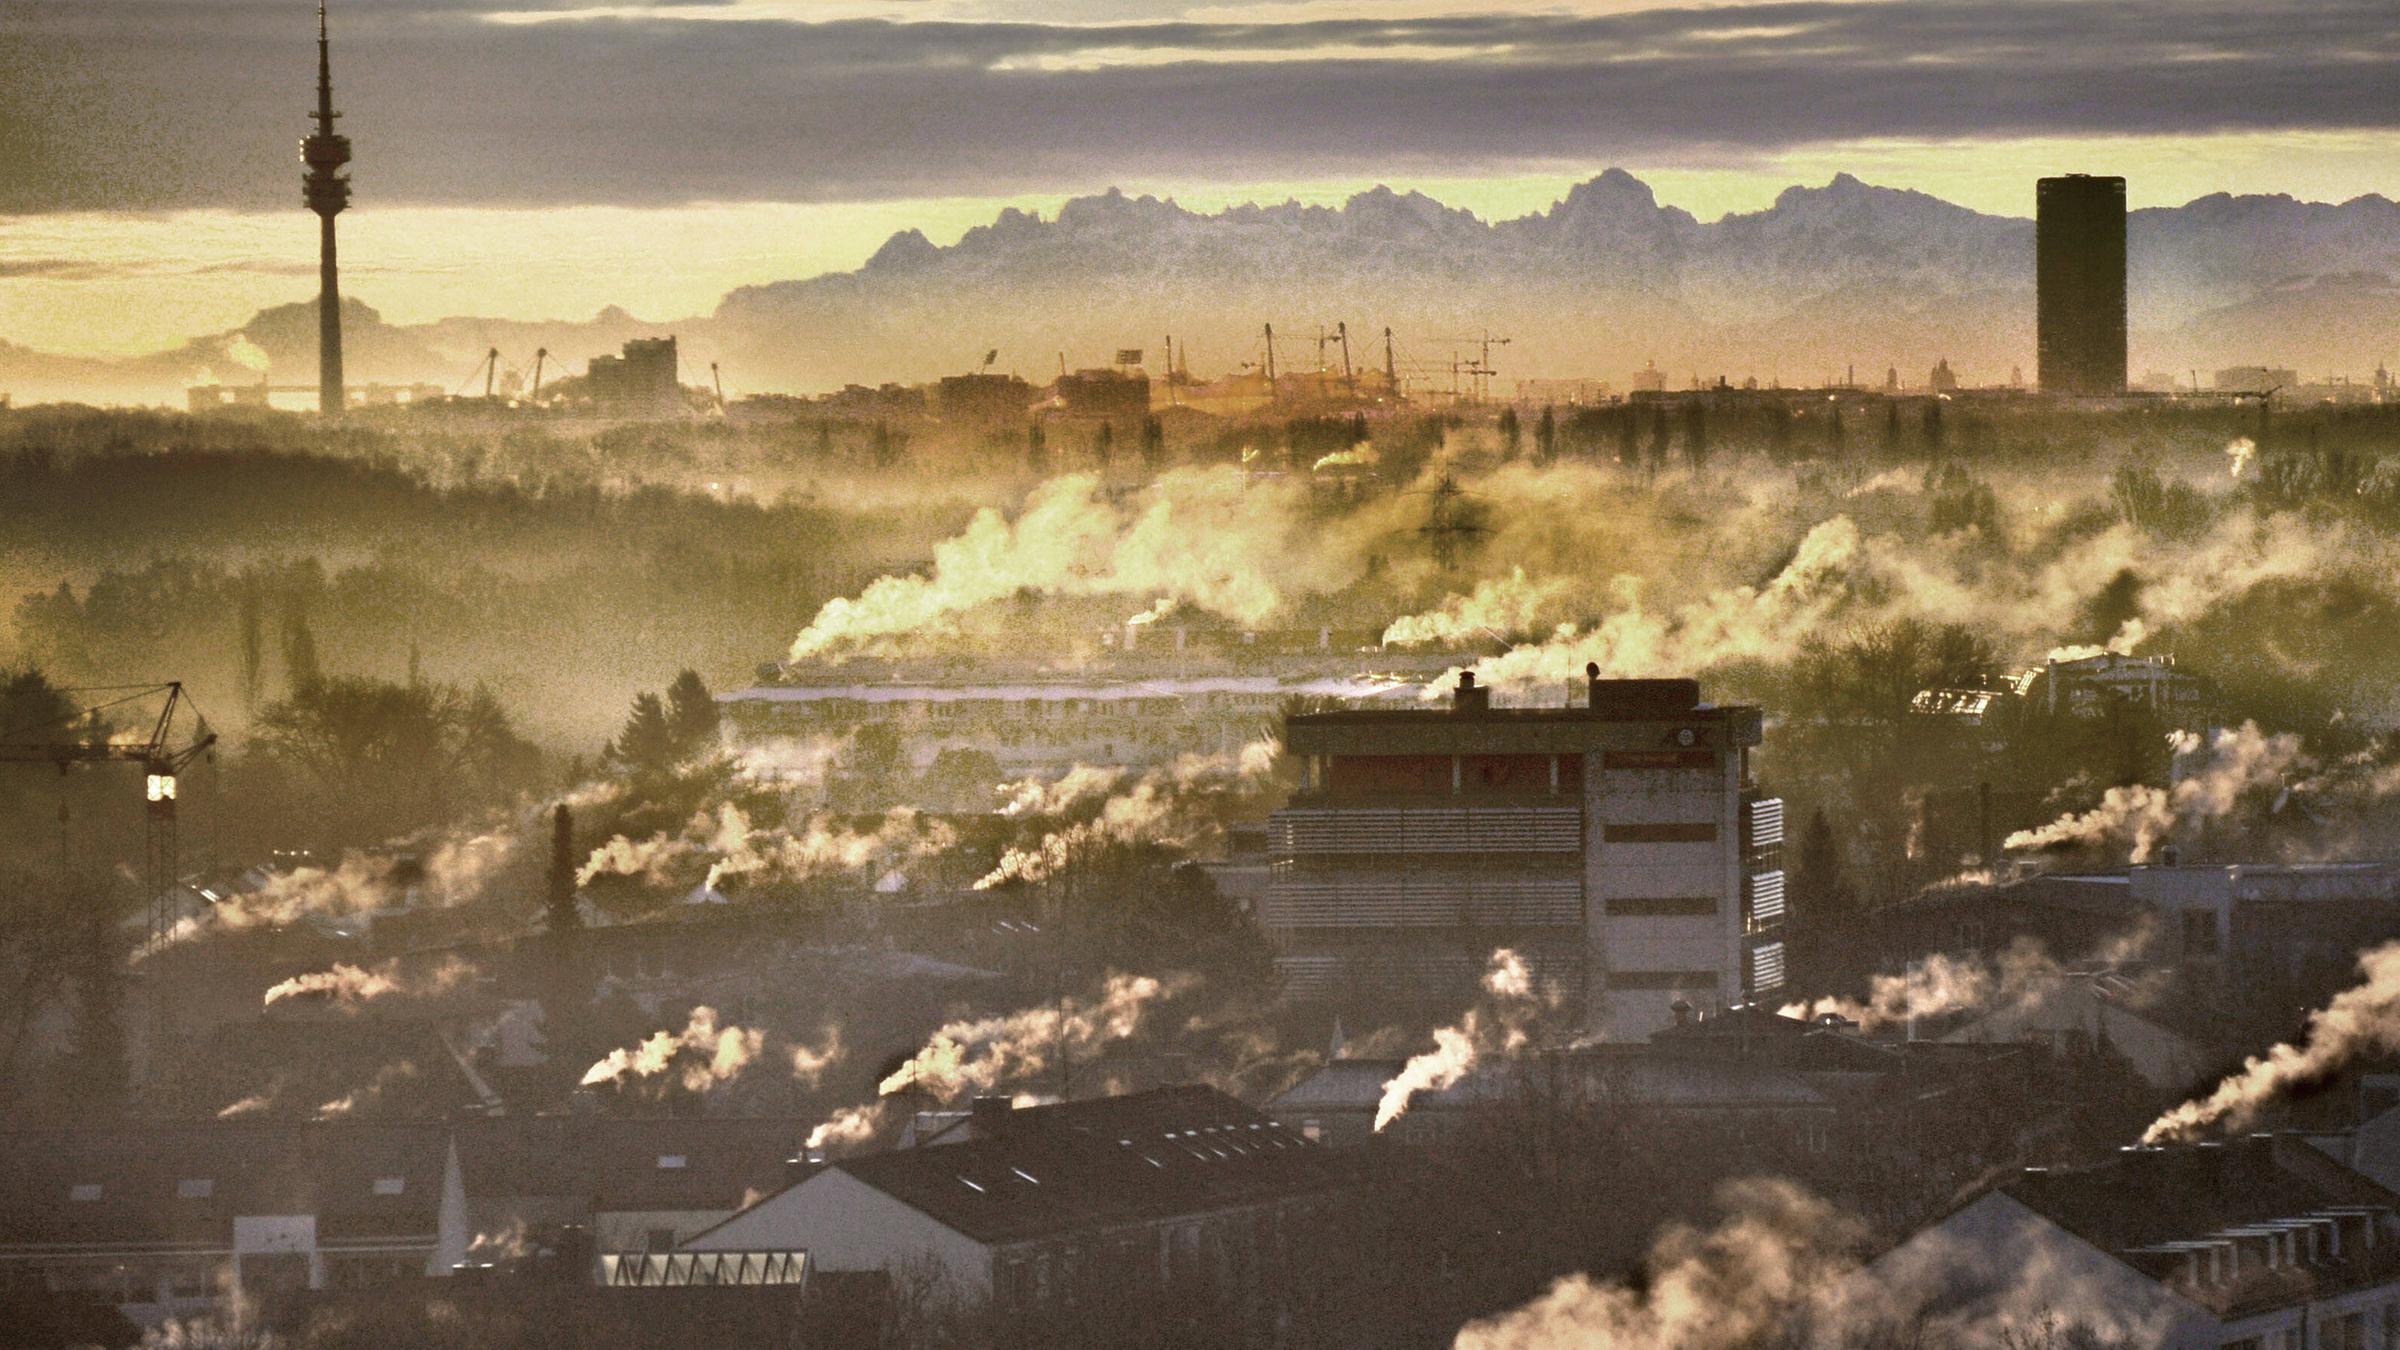 Archivbild: Rauchende Schronsteine, Smog über München